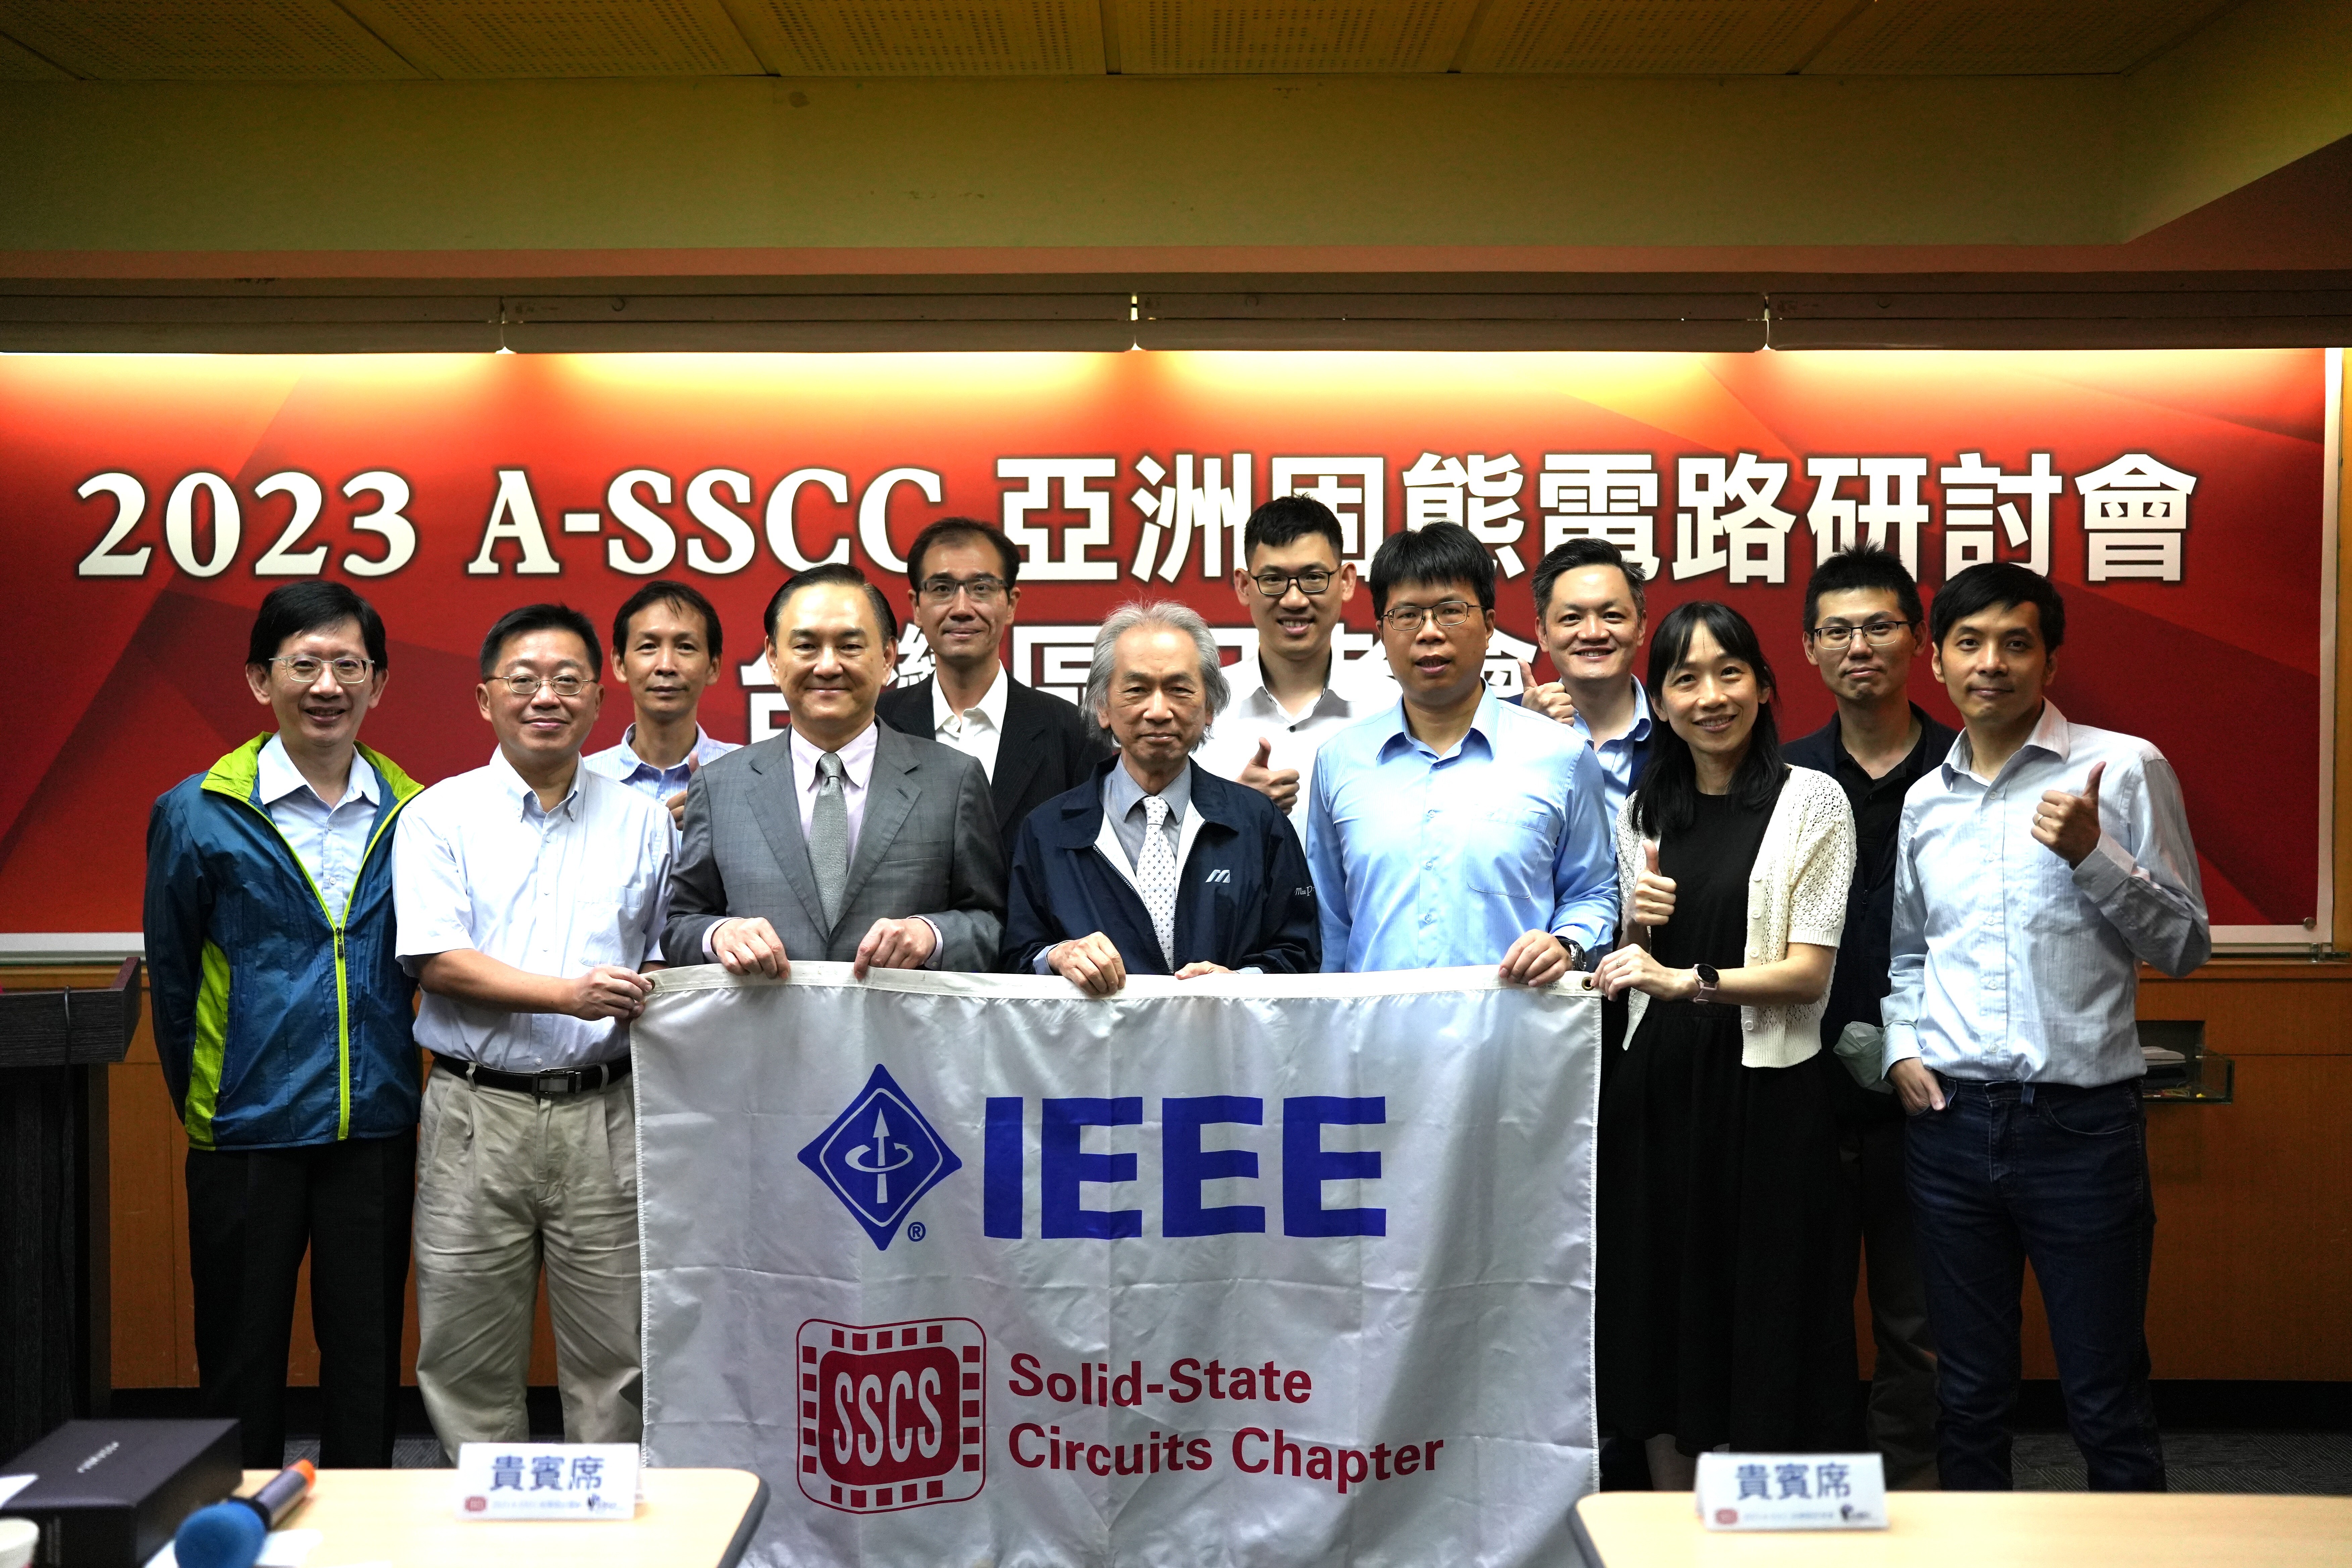 2023 IEEE 亞洲固態電路研討會（A-SSCC）成大獲選論文搶先發表